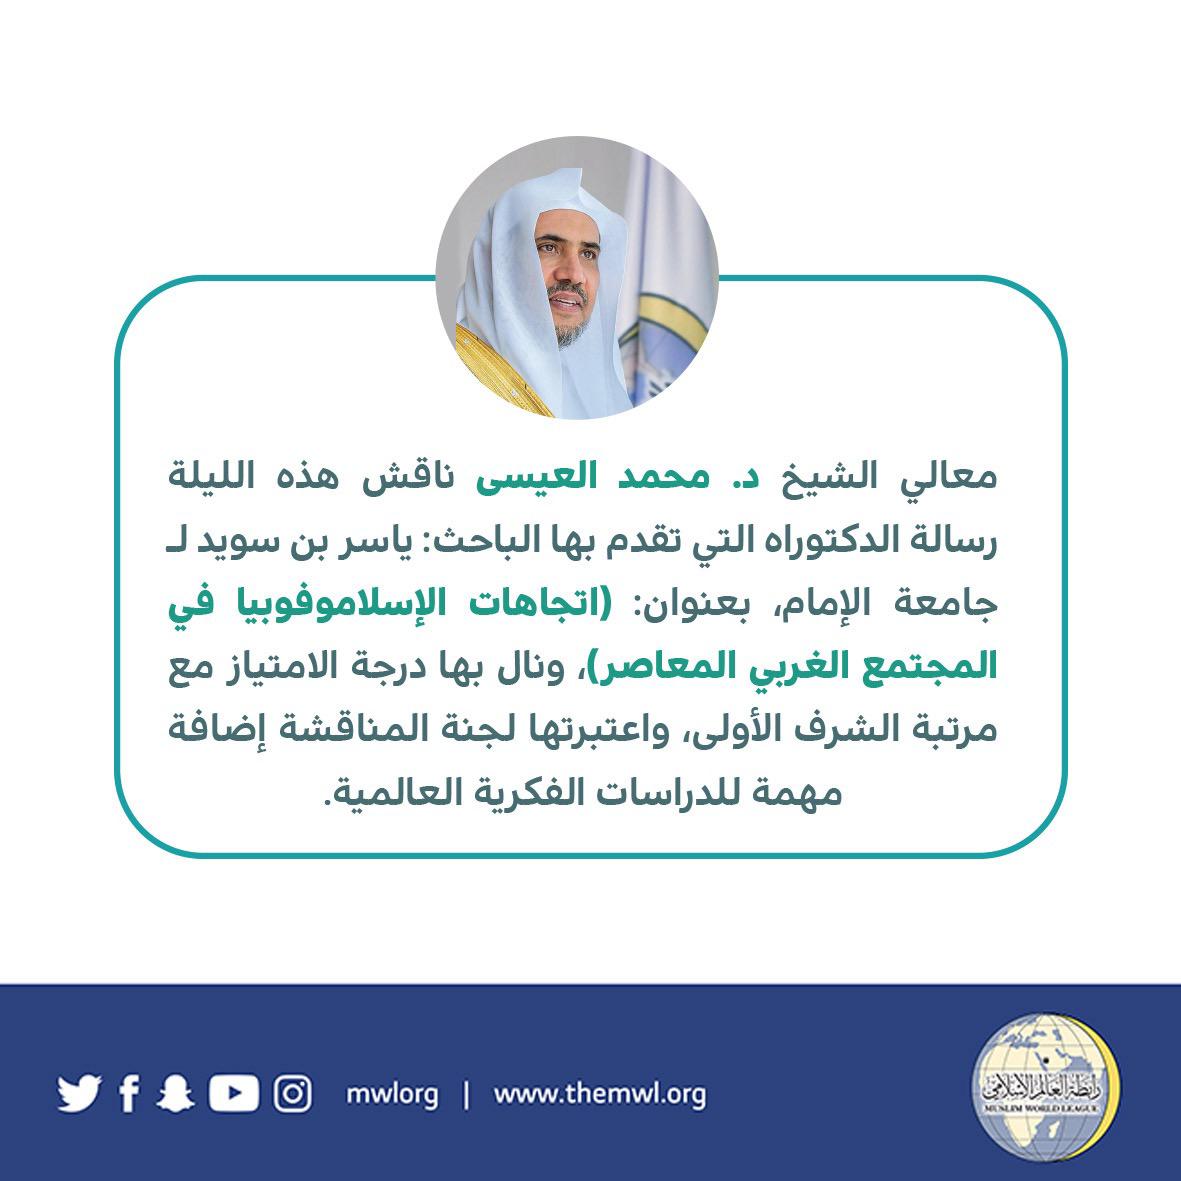 شیخ ڈاکٹر محمد العیسی نے ڈاکٹریٹ مقالہ بعنوان(معاصر مغربی معاشرے میں اسلام فوبیا کے رجحانات) کا وائیوا کیا